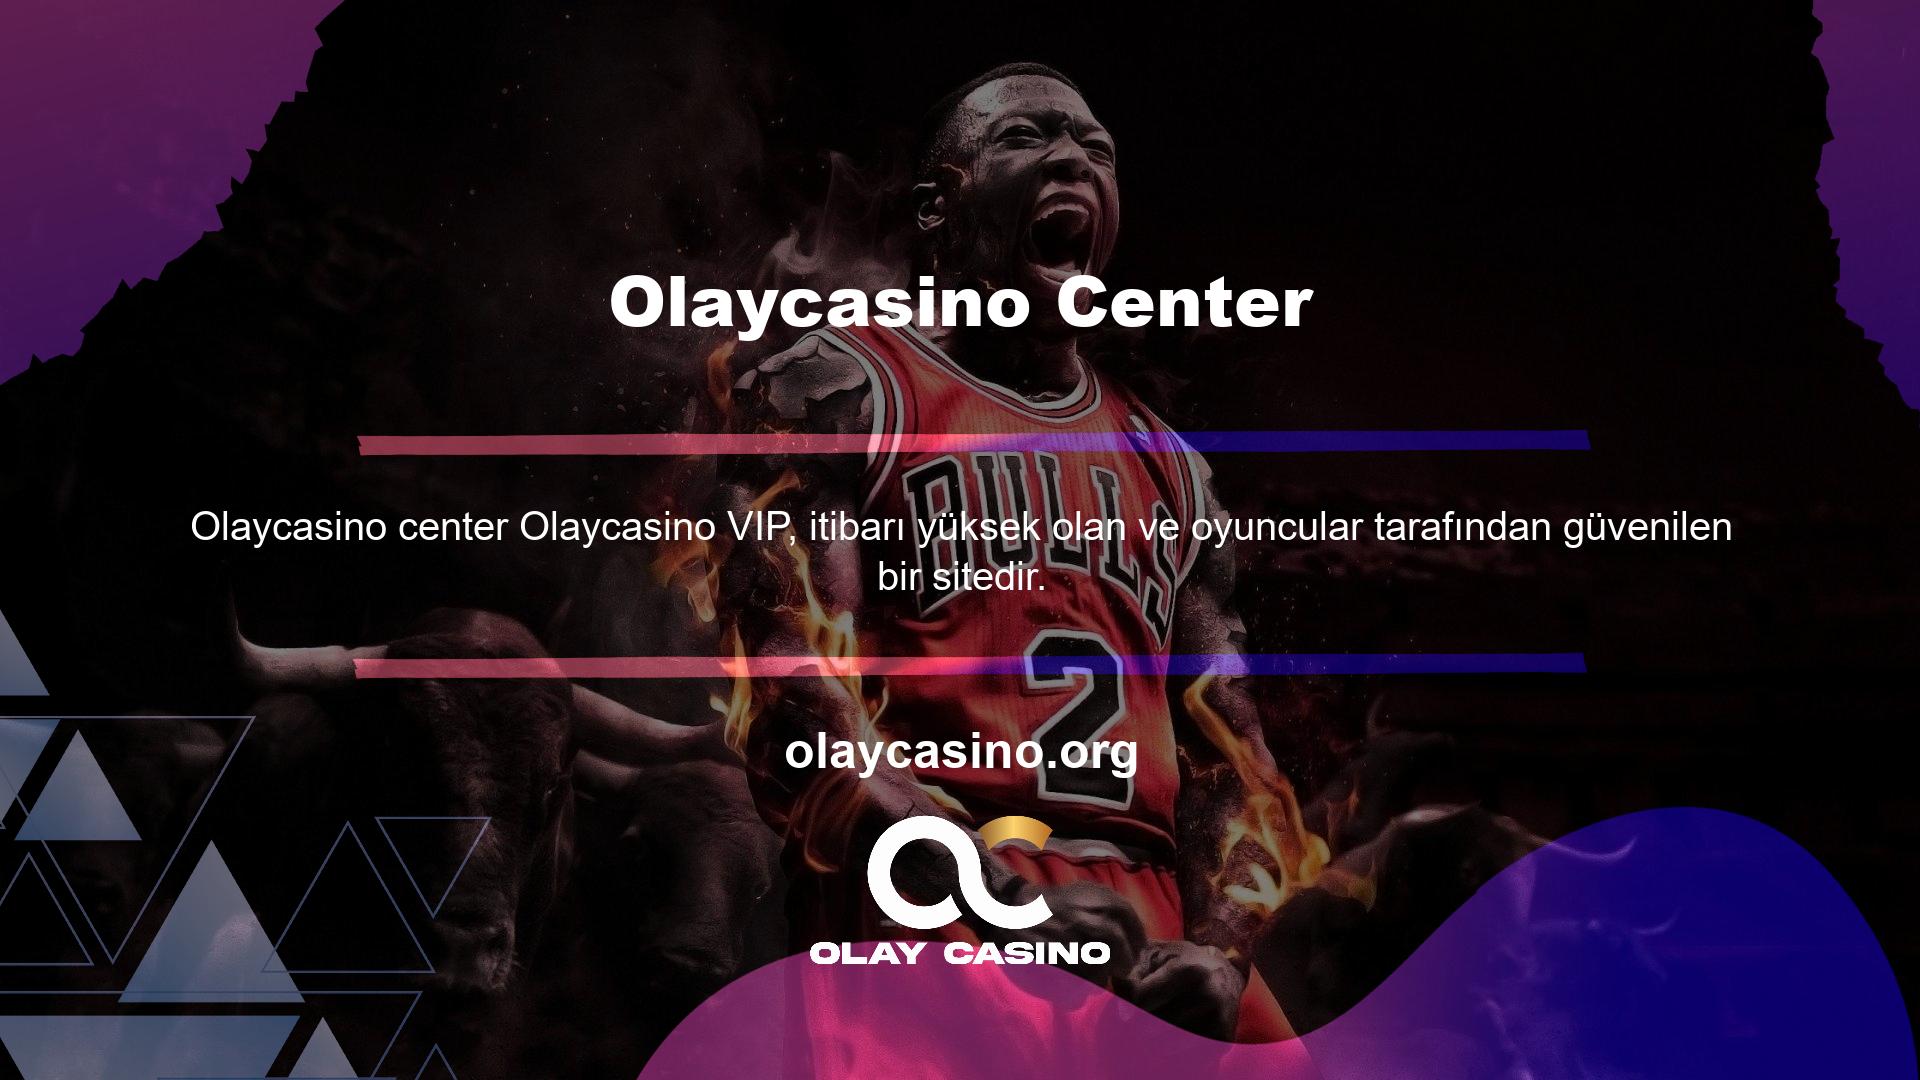 Bu amaçla Olaycasino kullanıcılara VIP olma fırsatını sunmaktadır